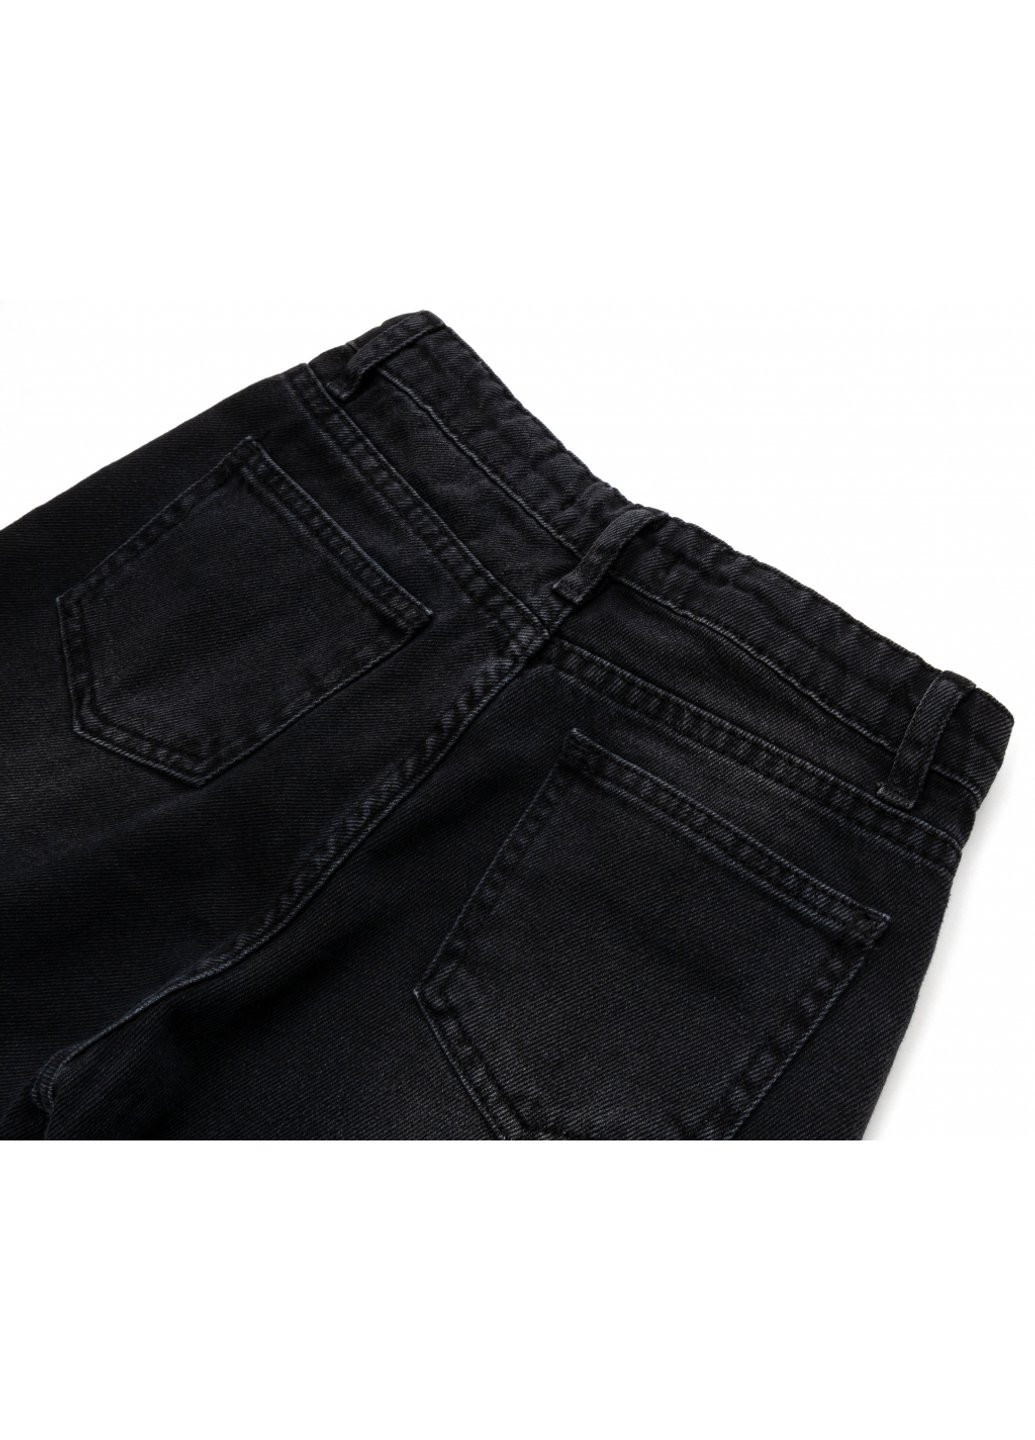 Черные демисезонные джинсы с потертостями (15557-140g-black) Breeze